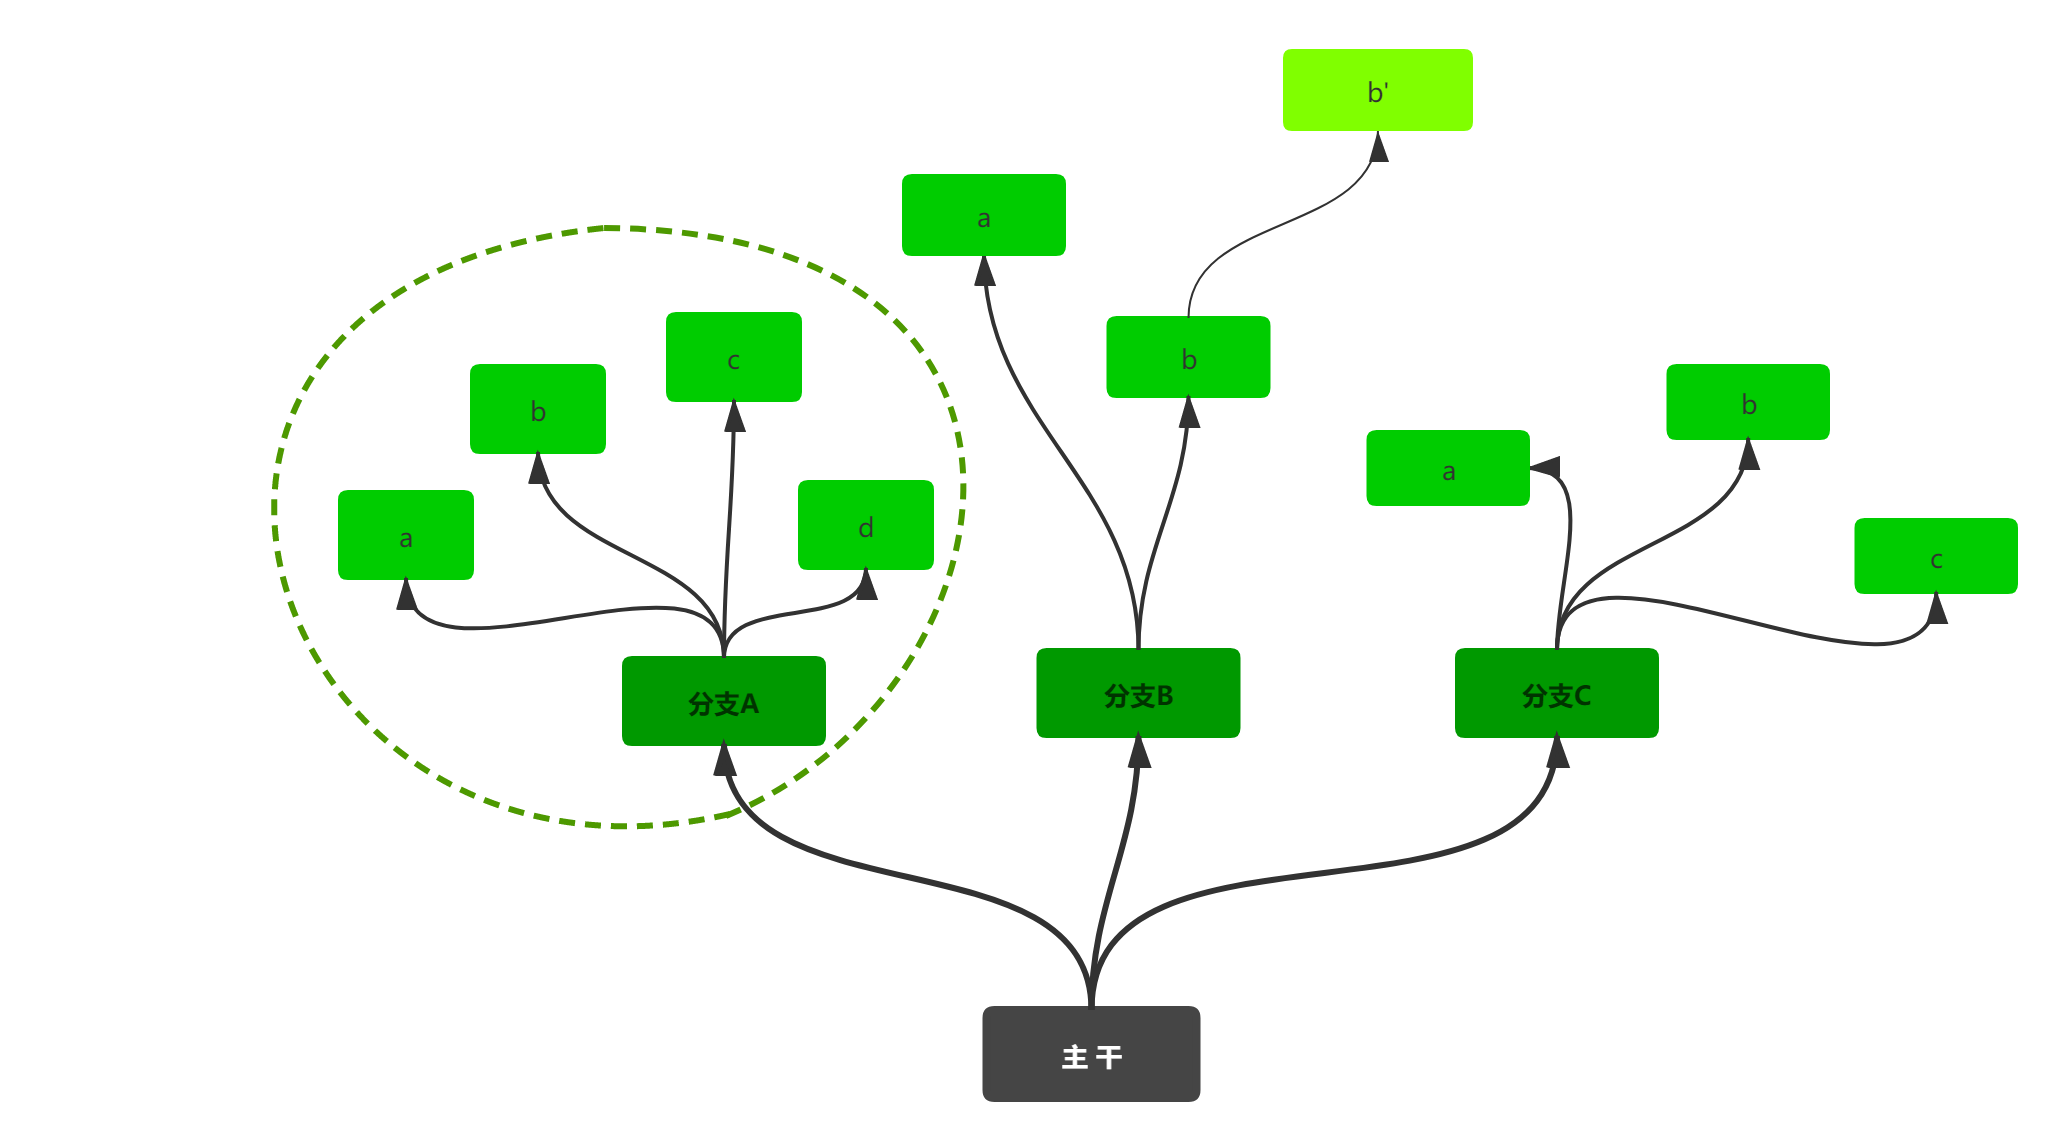 请问大家这种树形图是用什么软件画出来的很想知道